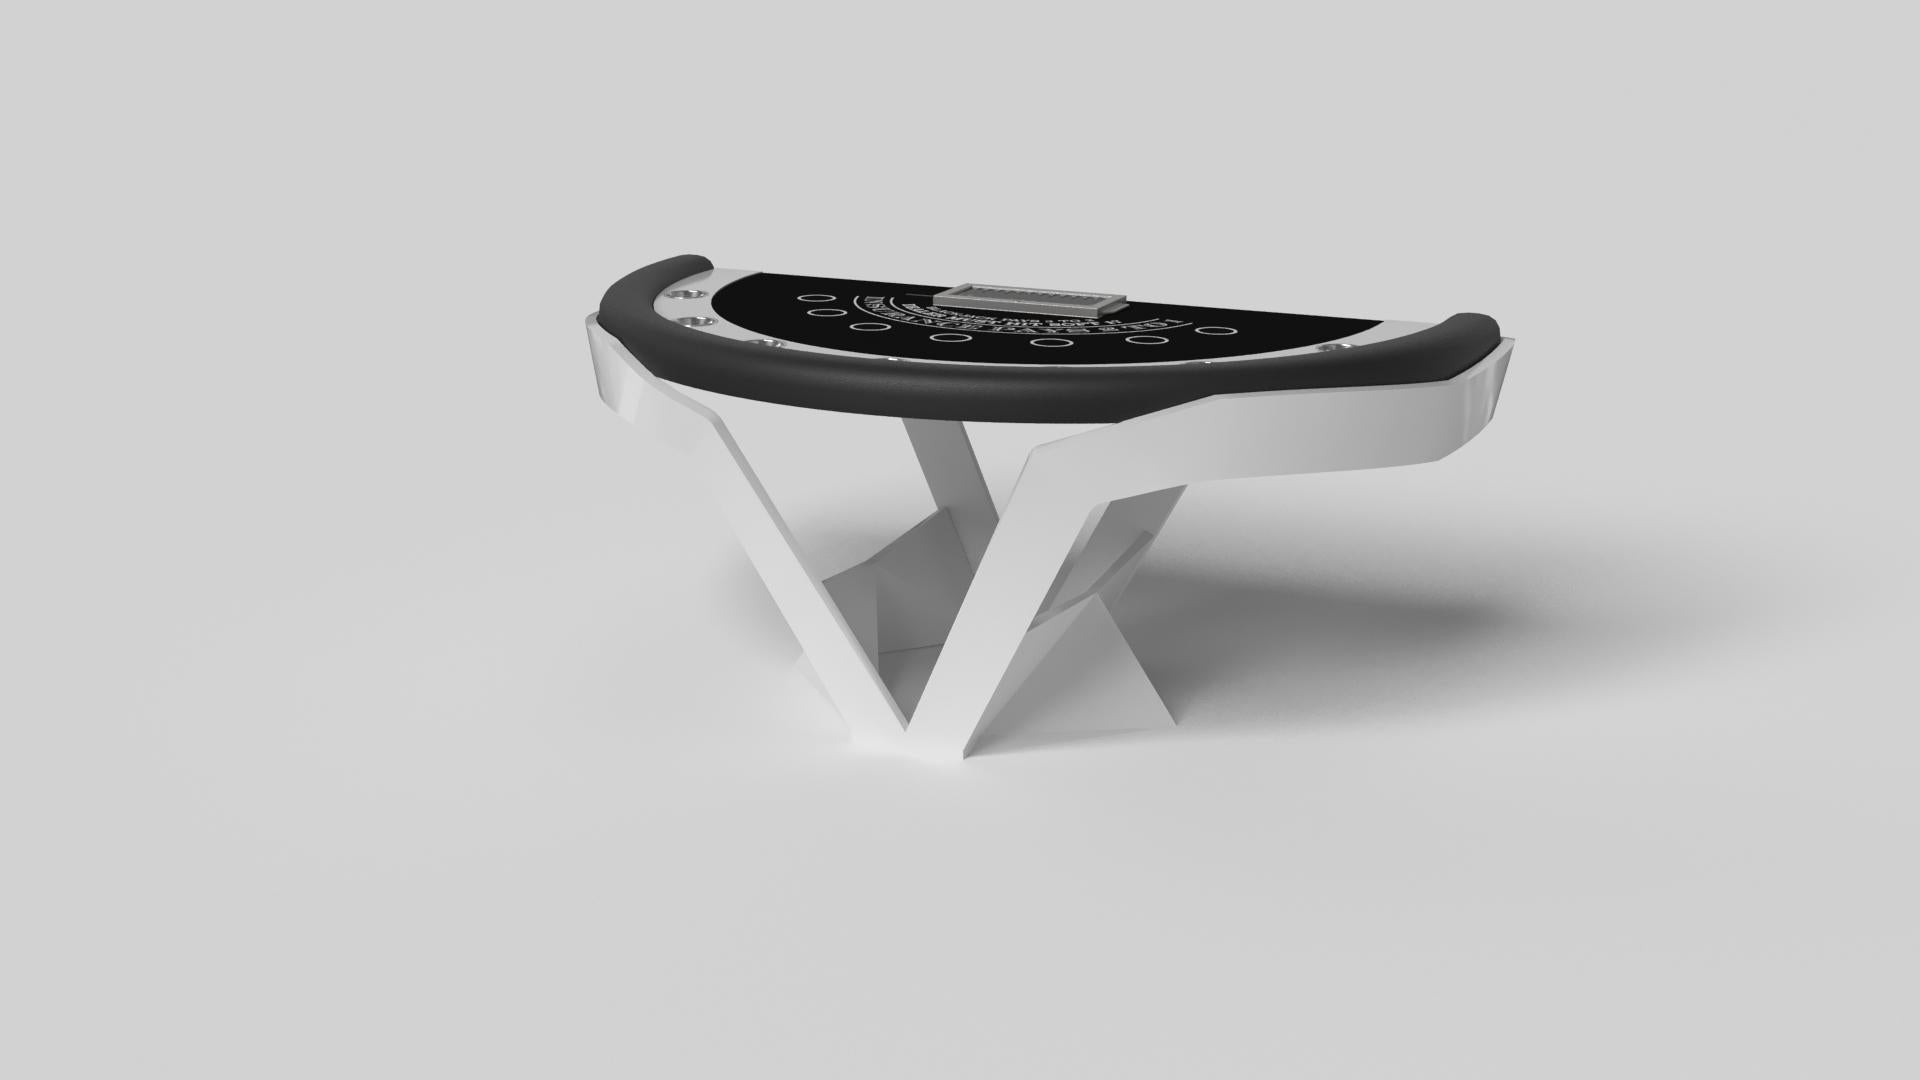 La table de blackjack Enzo s'inspire des angles aérodynamiques des véhicules européens haut de gamme. Conçue avec des lignes épurées en forme de V et une utilisation réfléchie de l'espace négatif, cette table affiche un esprit énergique tout en